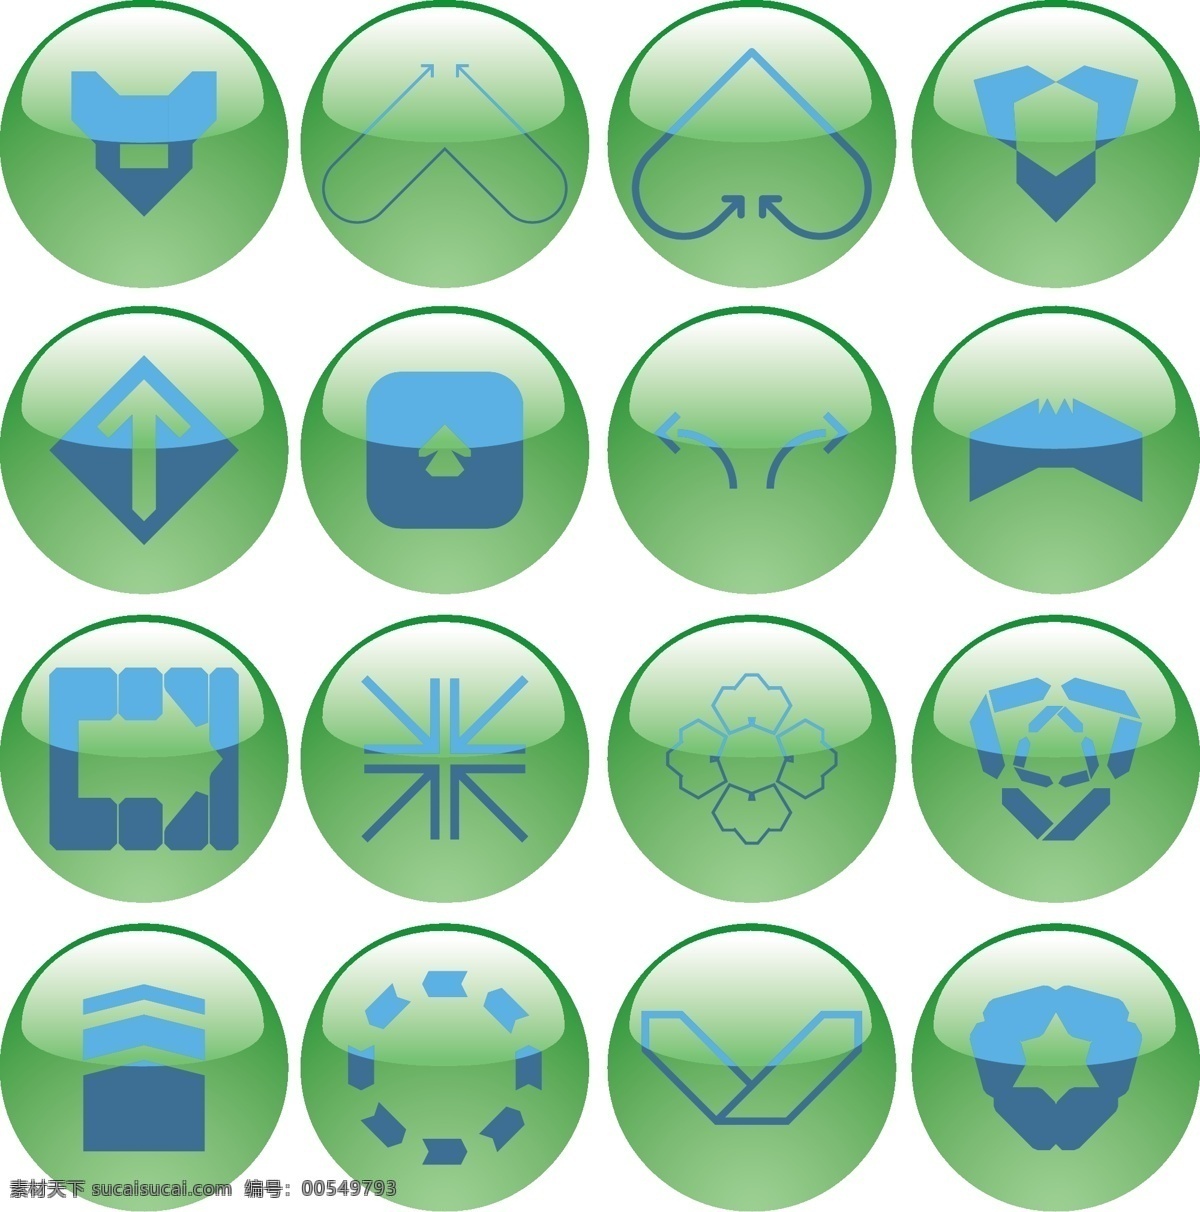 各种 符号 绿色 水晶球 按钮 图标 矢量 箭头 矢量图标 图像 图形 网页设计元素 简单的符号